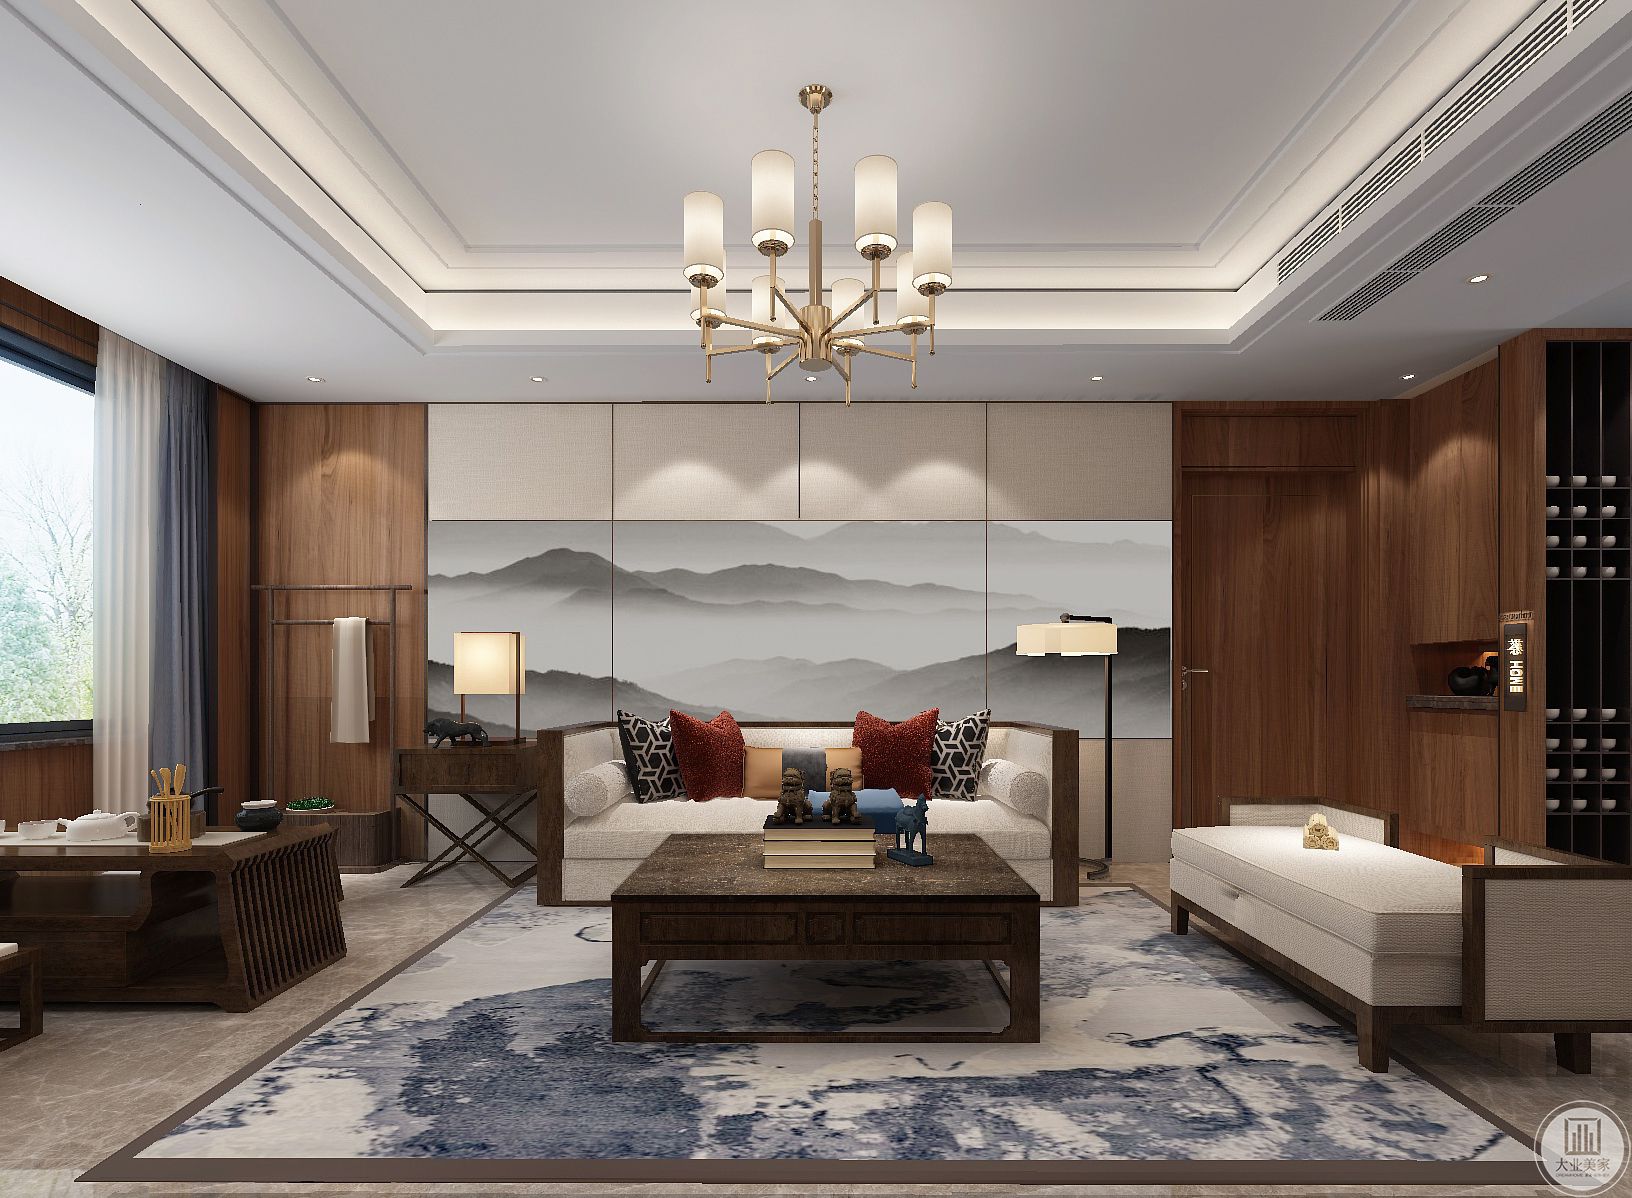 沙发背景墙是一幅充满诗意与端庄感的画面，两侧木饰面的基础加入金属质感的装饰线条，也让客厅氛围显得更加端庄雅韵